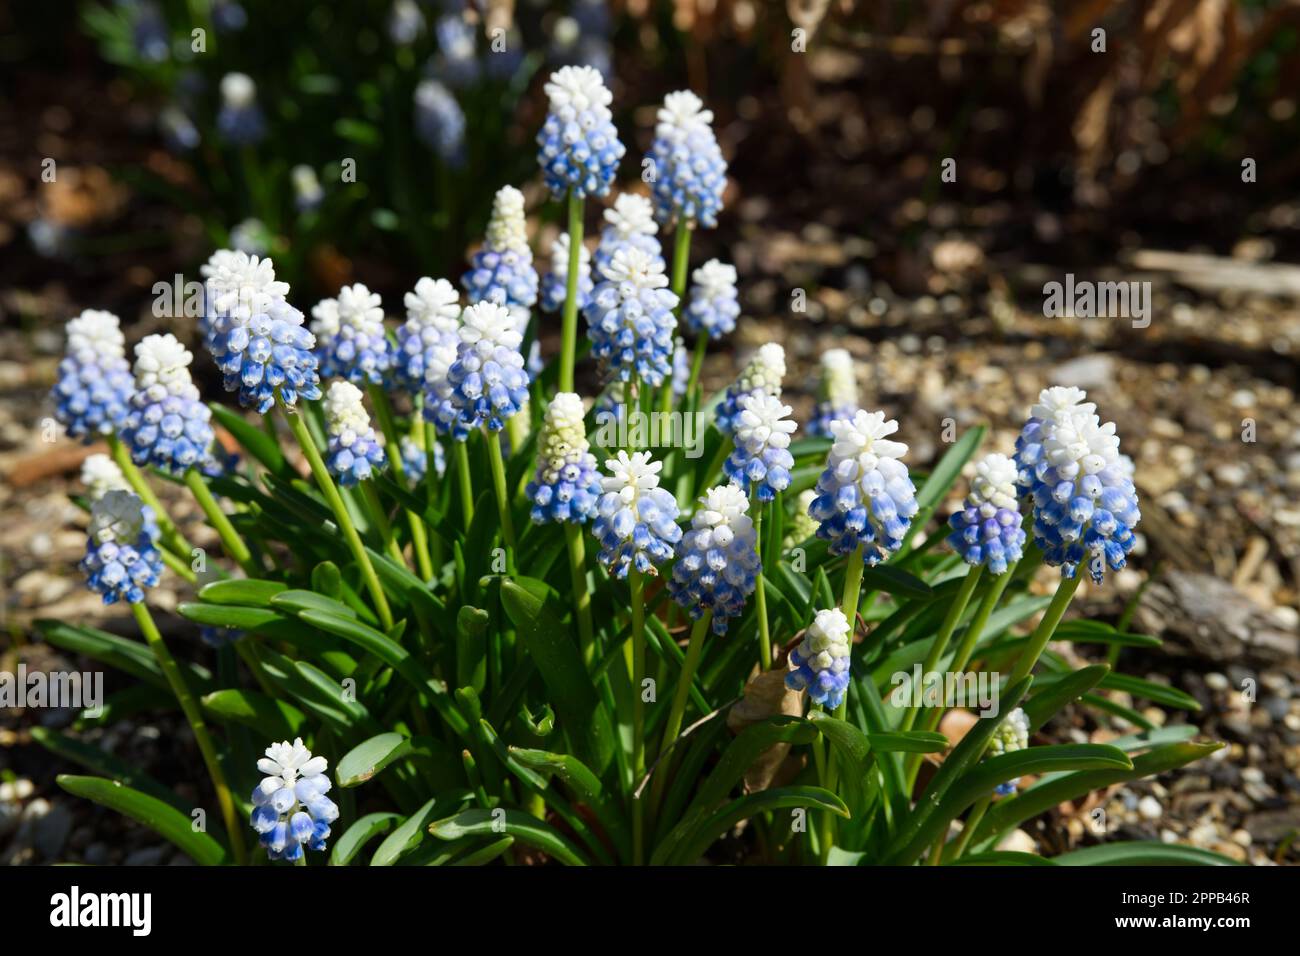 Blassblaue und weiße Frühlingsblumen der Traubenhyazinth Muscari Mountain Lady im britischen Garten April Stockfoto